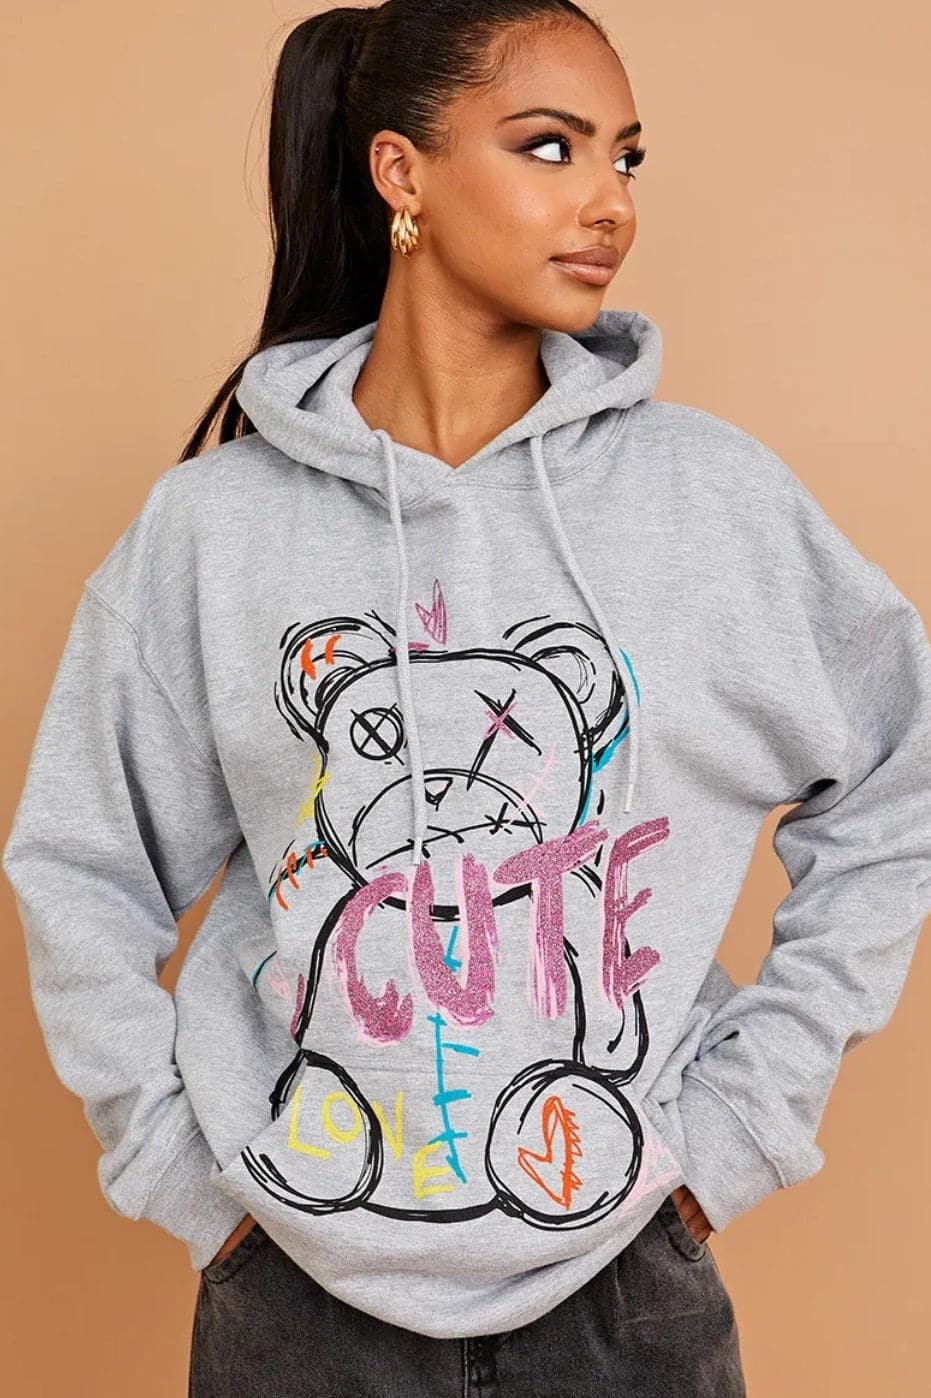 Hoodie Sweatshirt Grey Cute Teddy Graphics - Premium Hoodie Sweatshirt from justgal - Just £16.99! Shop now at justgal